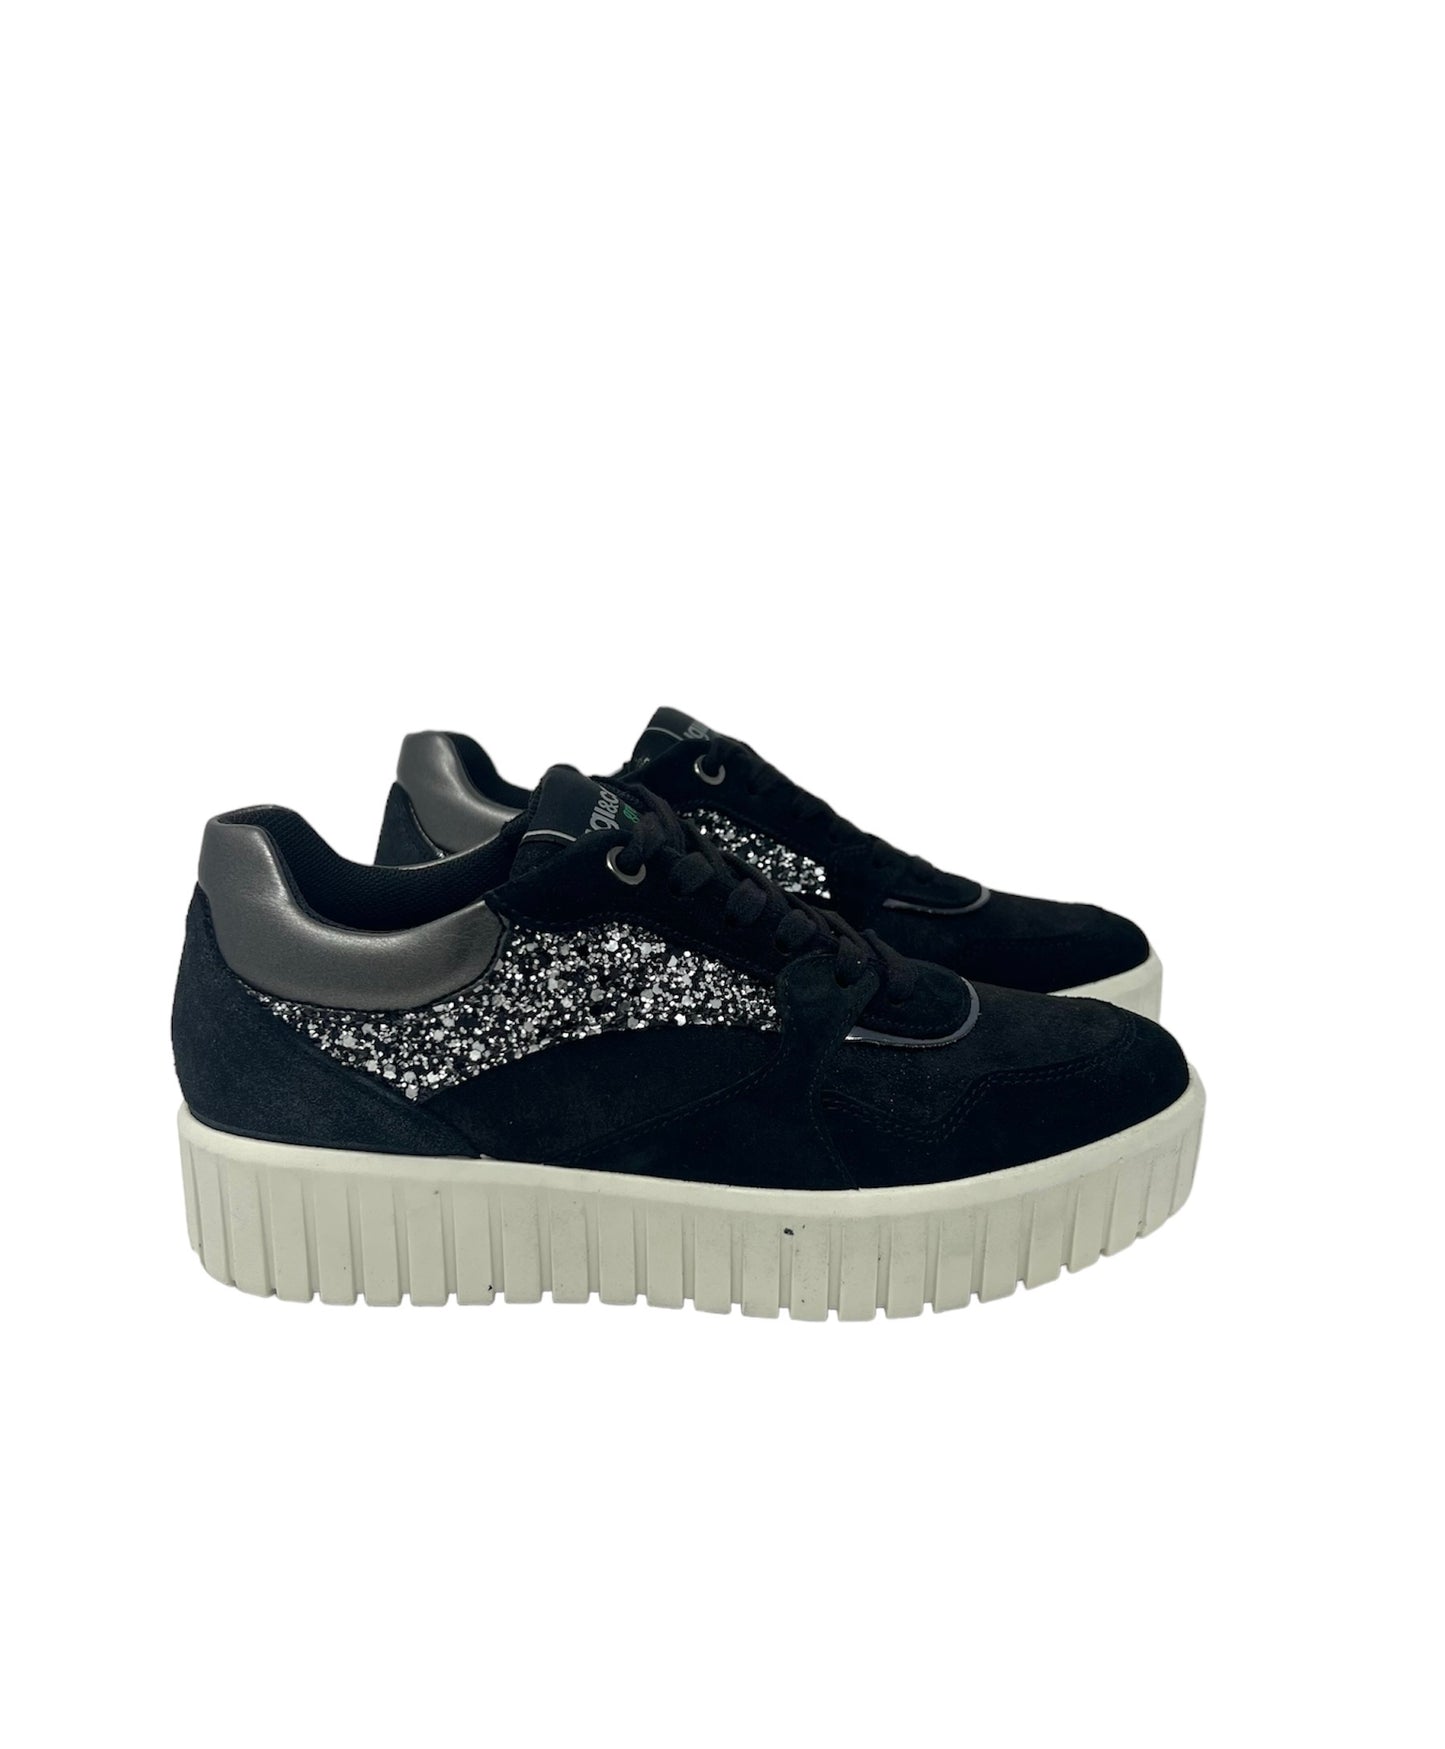 Sneakers in camoscio nero e glitter-4578700